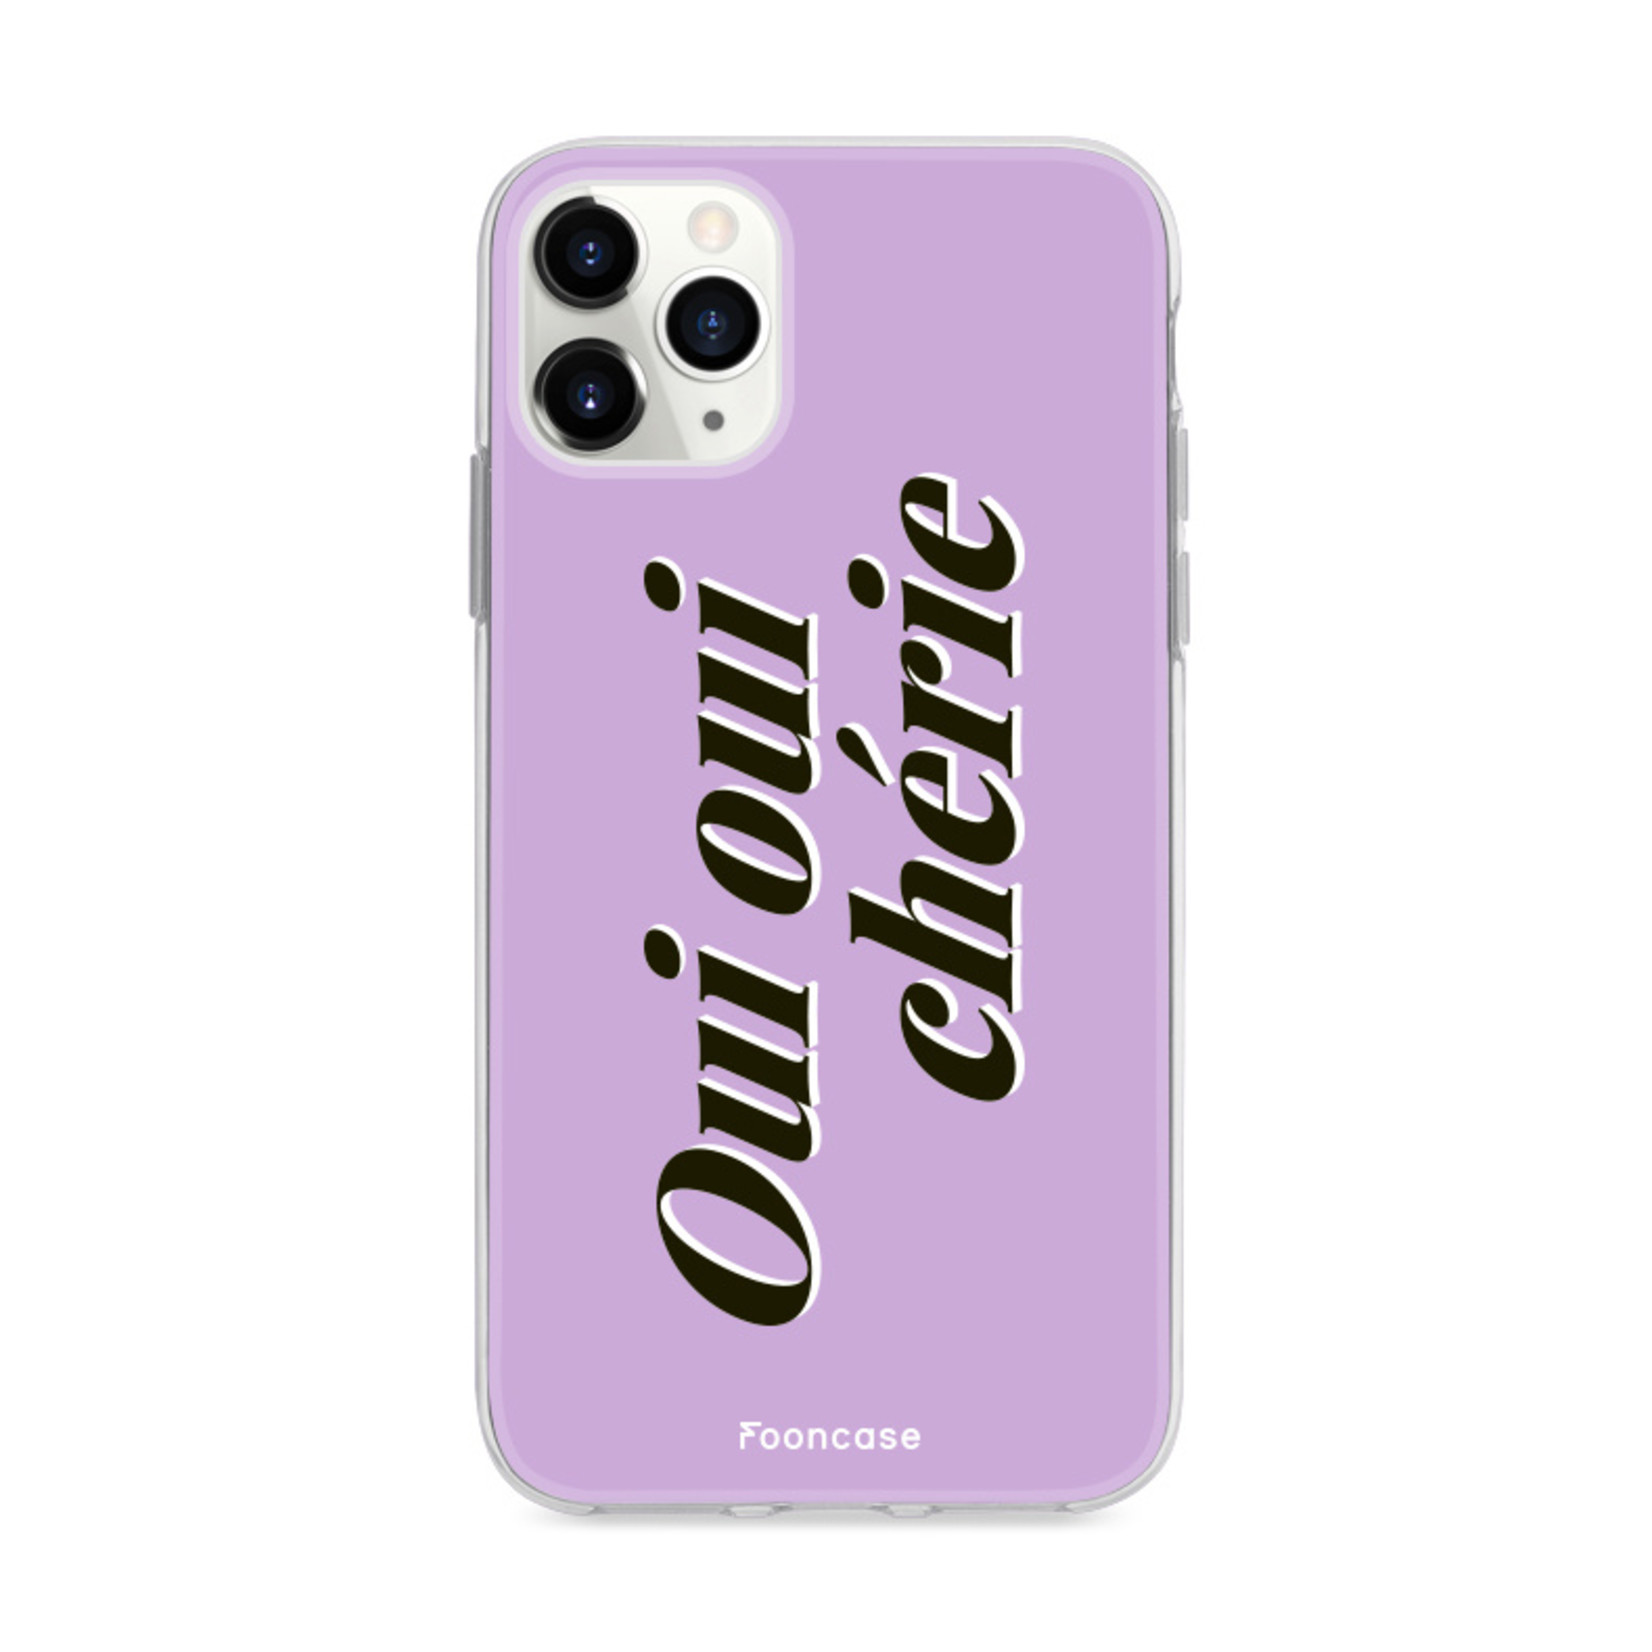 FOONCASE IPhone 11 Pro Cover - Oui Oui Chérie